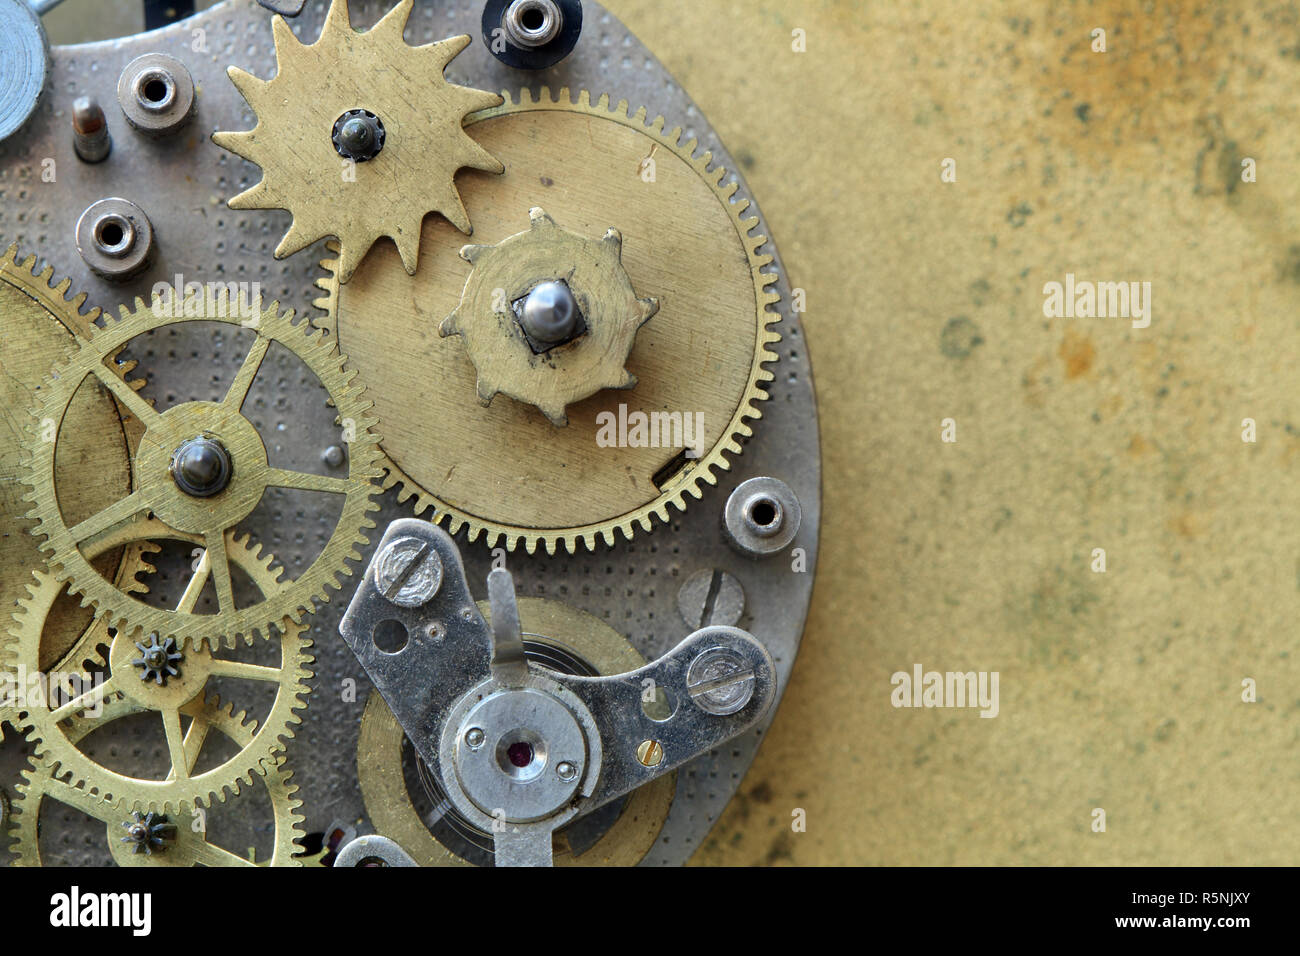 Closeup of old metal horloge sur fond de laiton jaune Banque D'Images